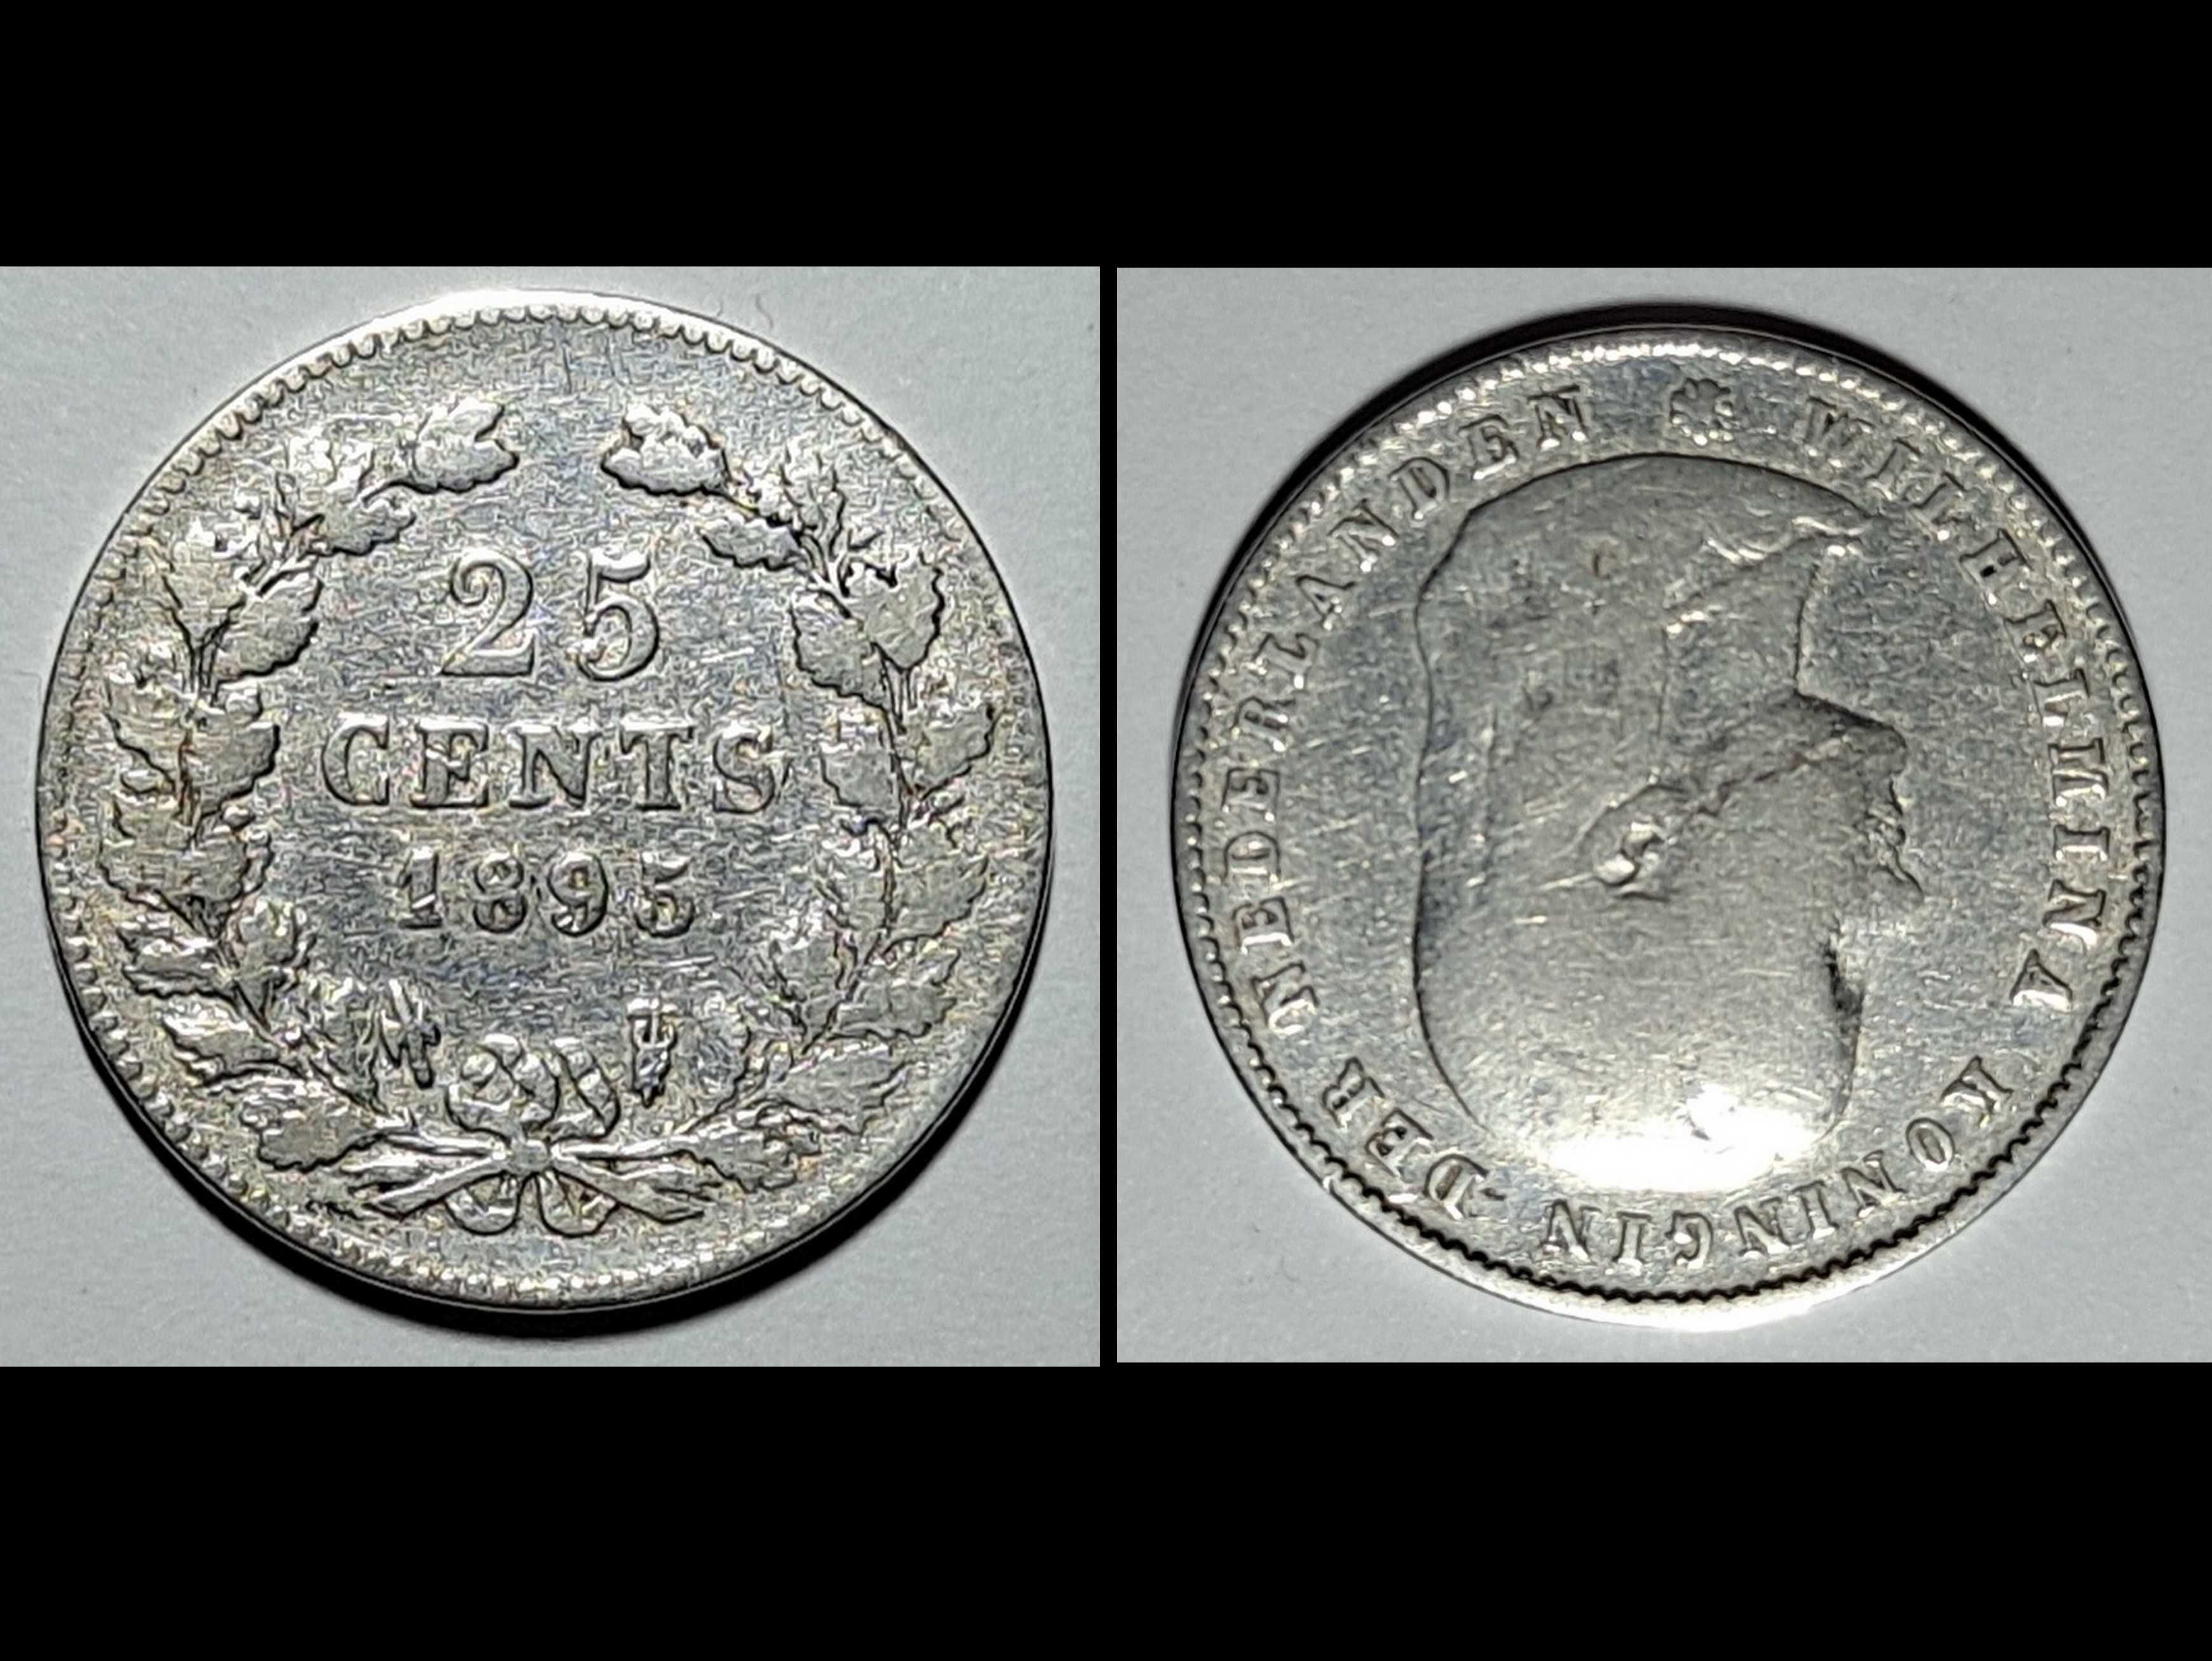 moneta - 25 centów - Holandia  - srebro - 1895 r.